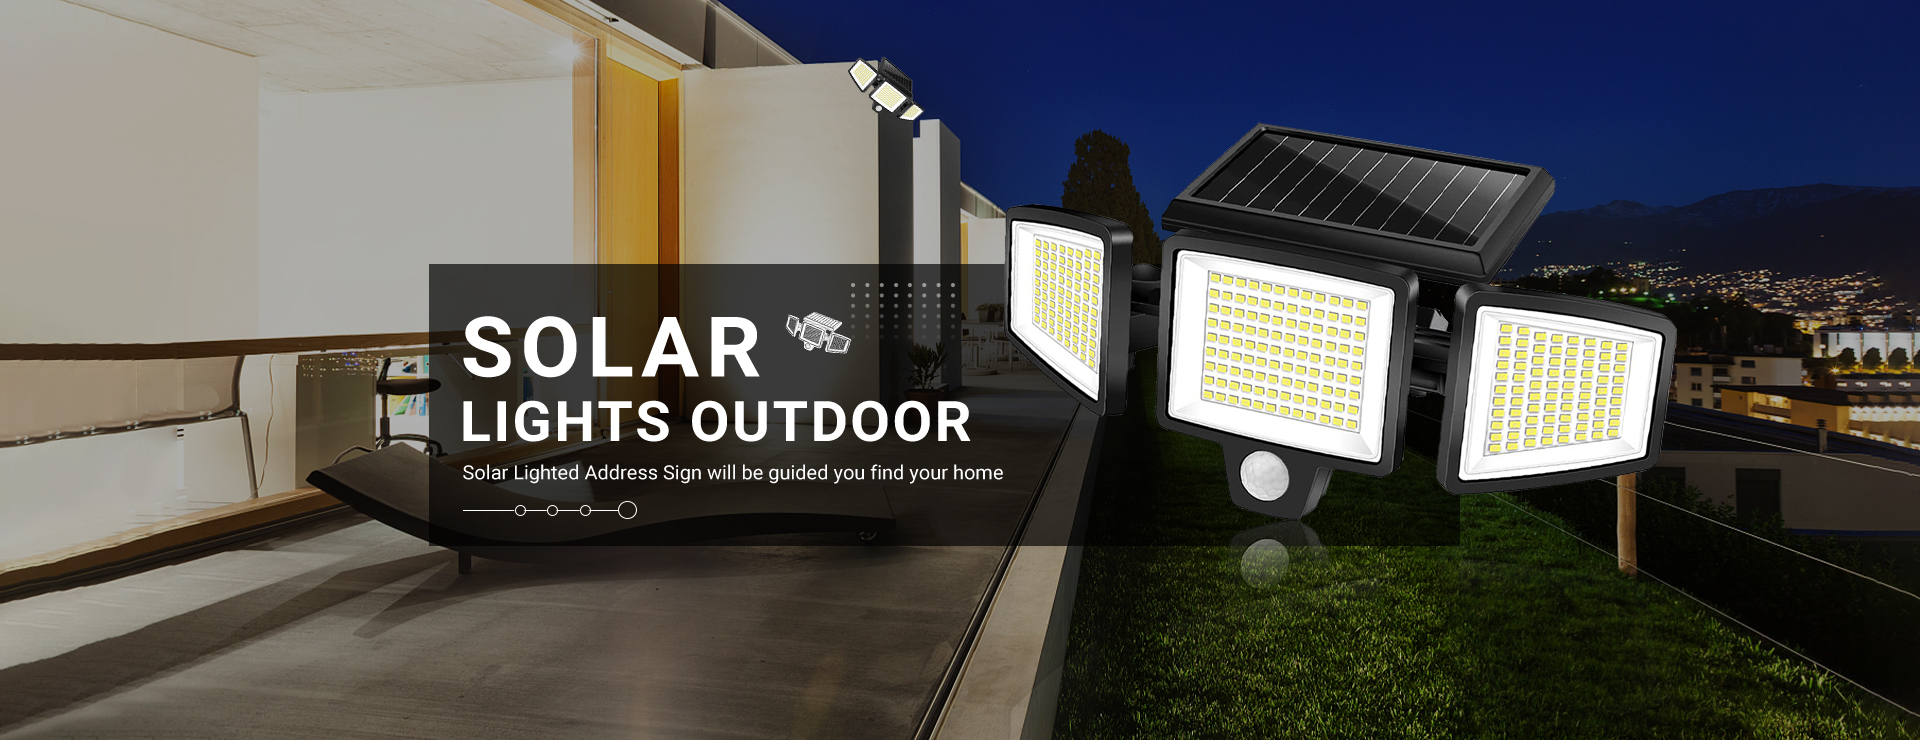 Solar Garden Light, Solar Lights, Solar Lights Outdoor - Yuancheng